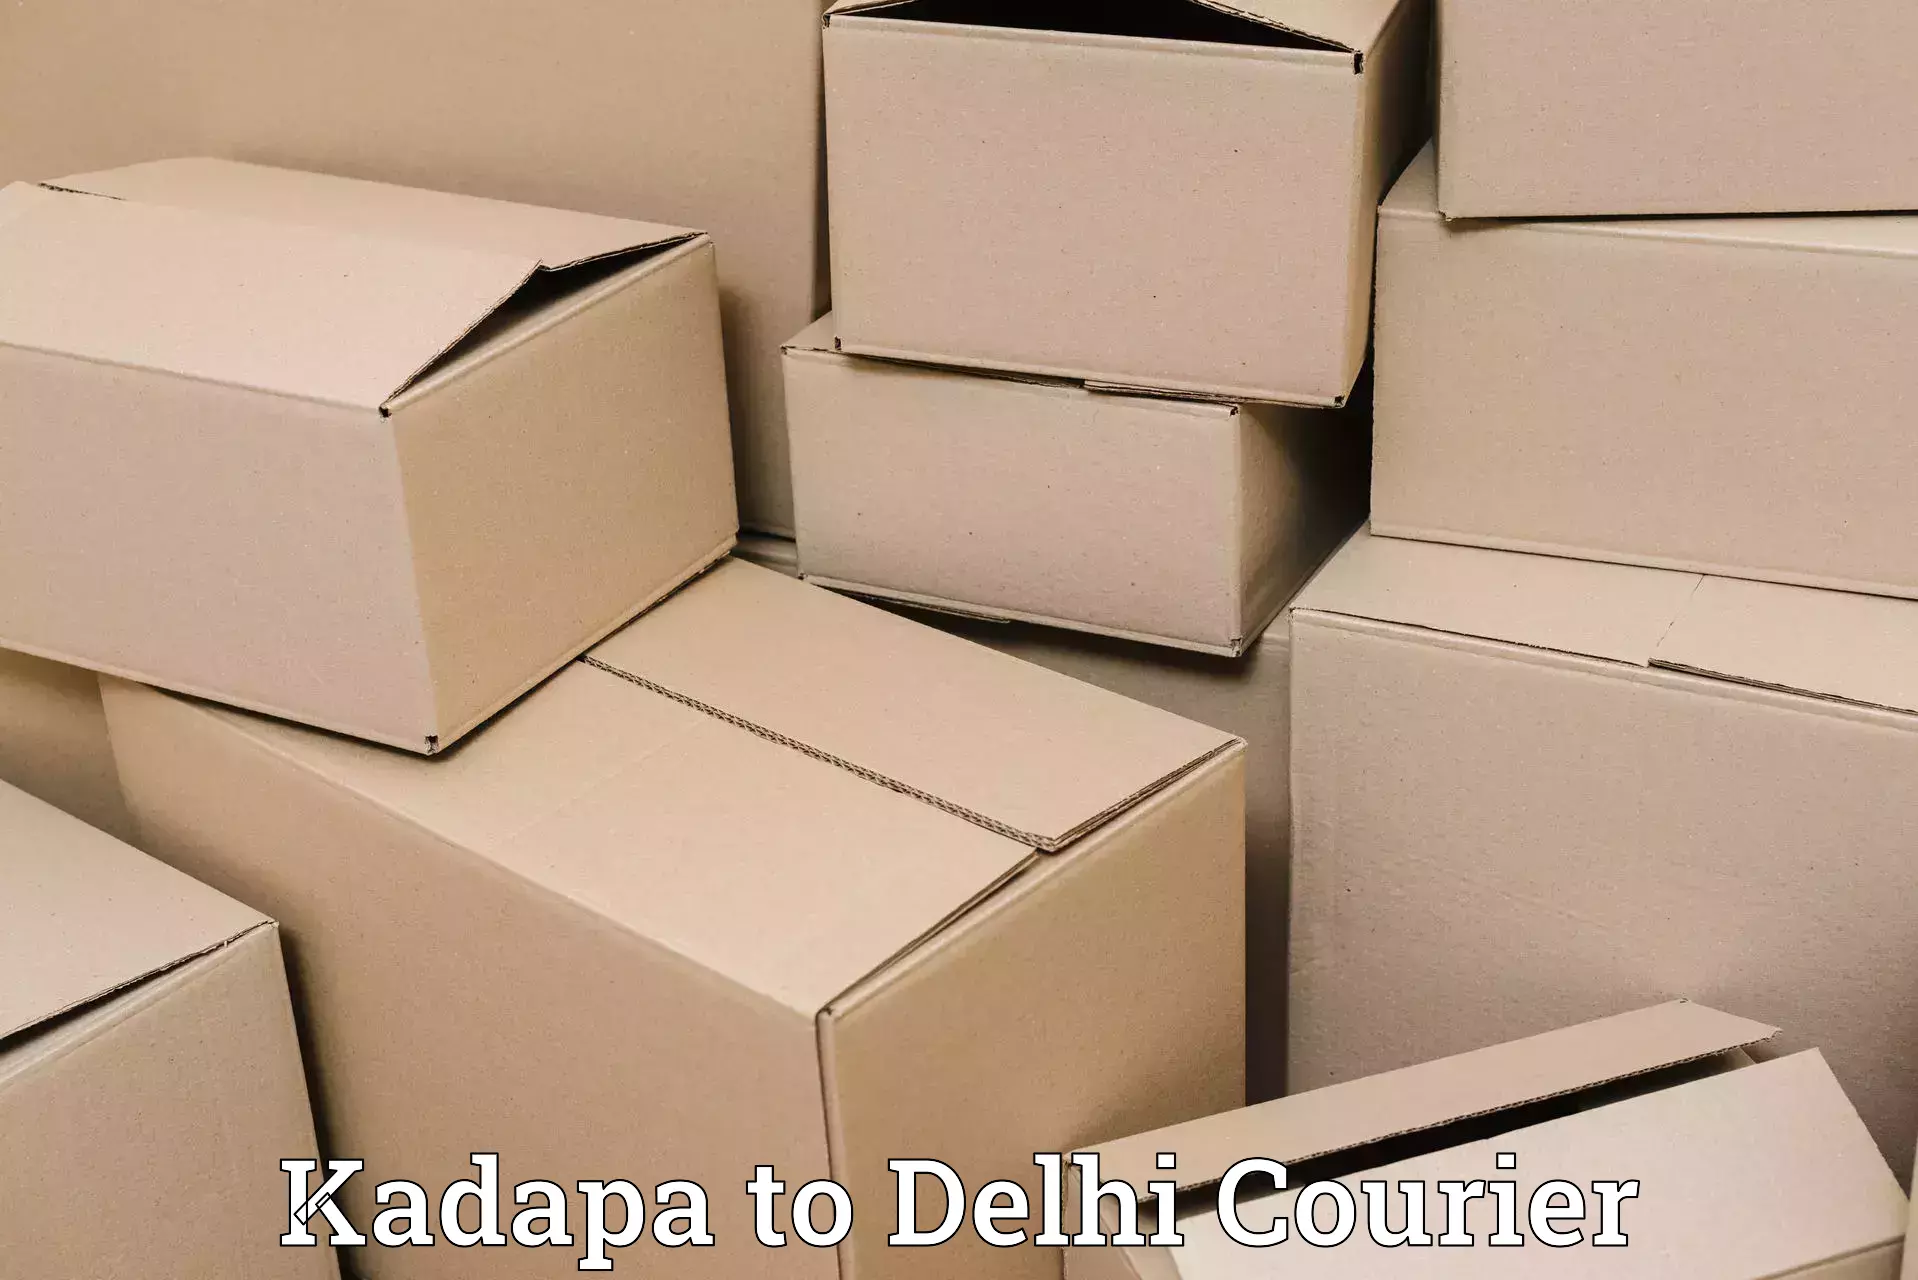 Door-to-door freight service Kadapa to Sarojini Nagar